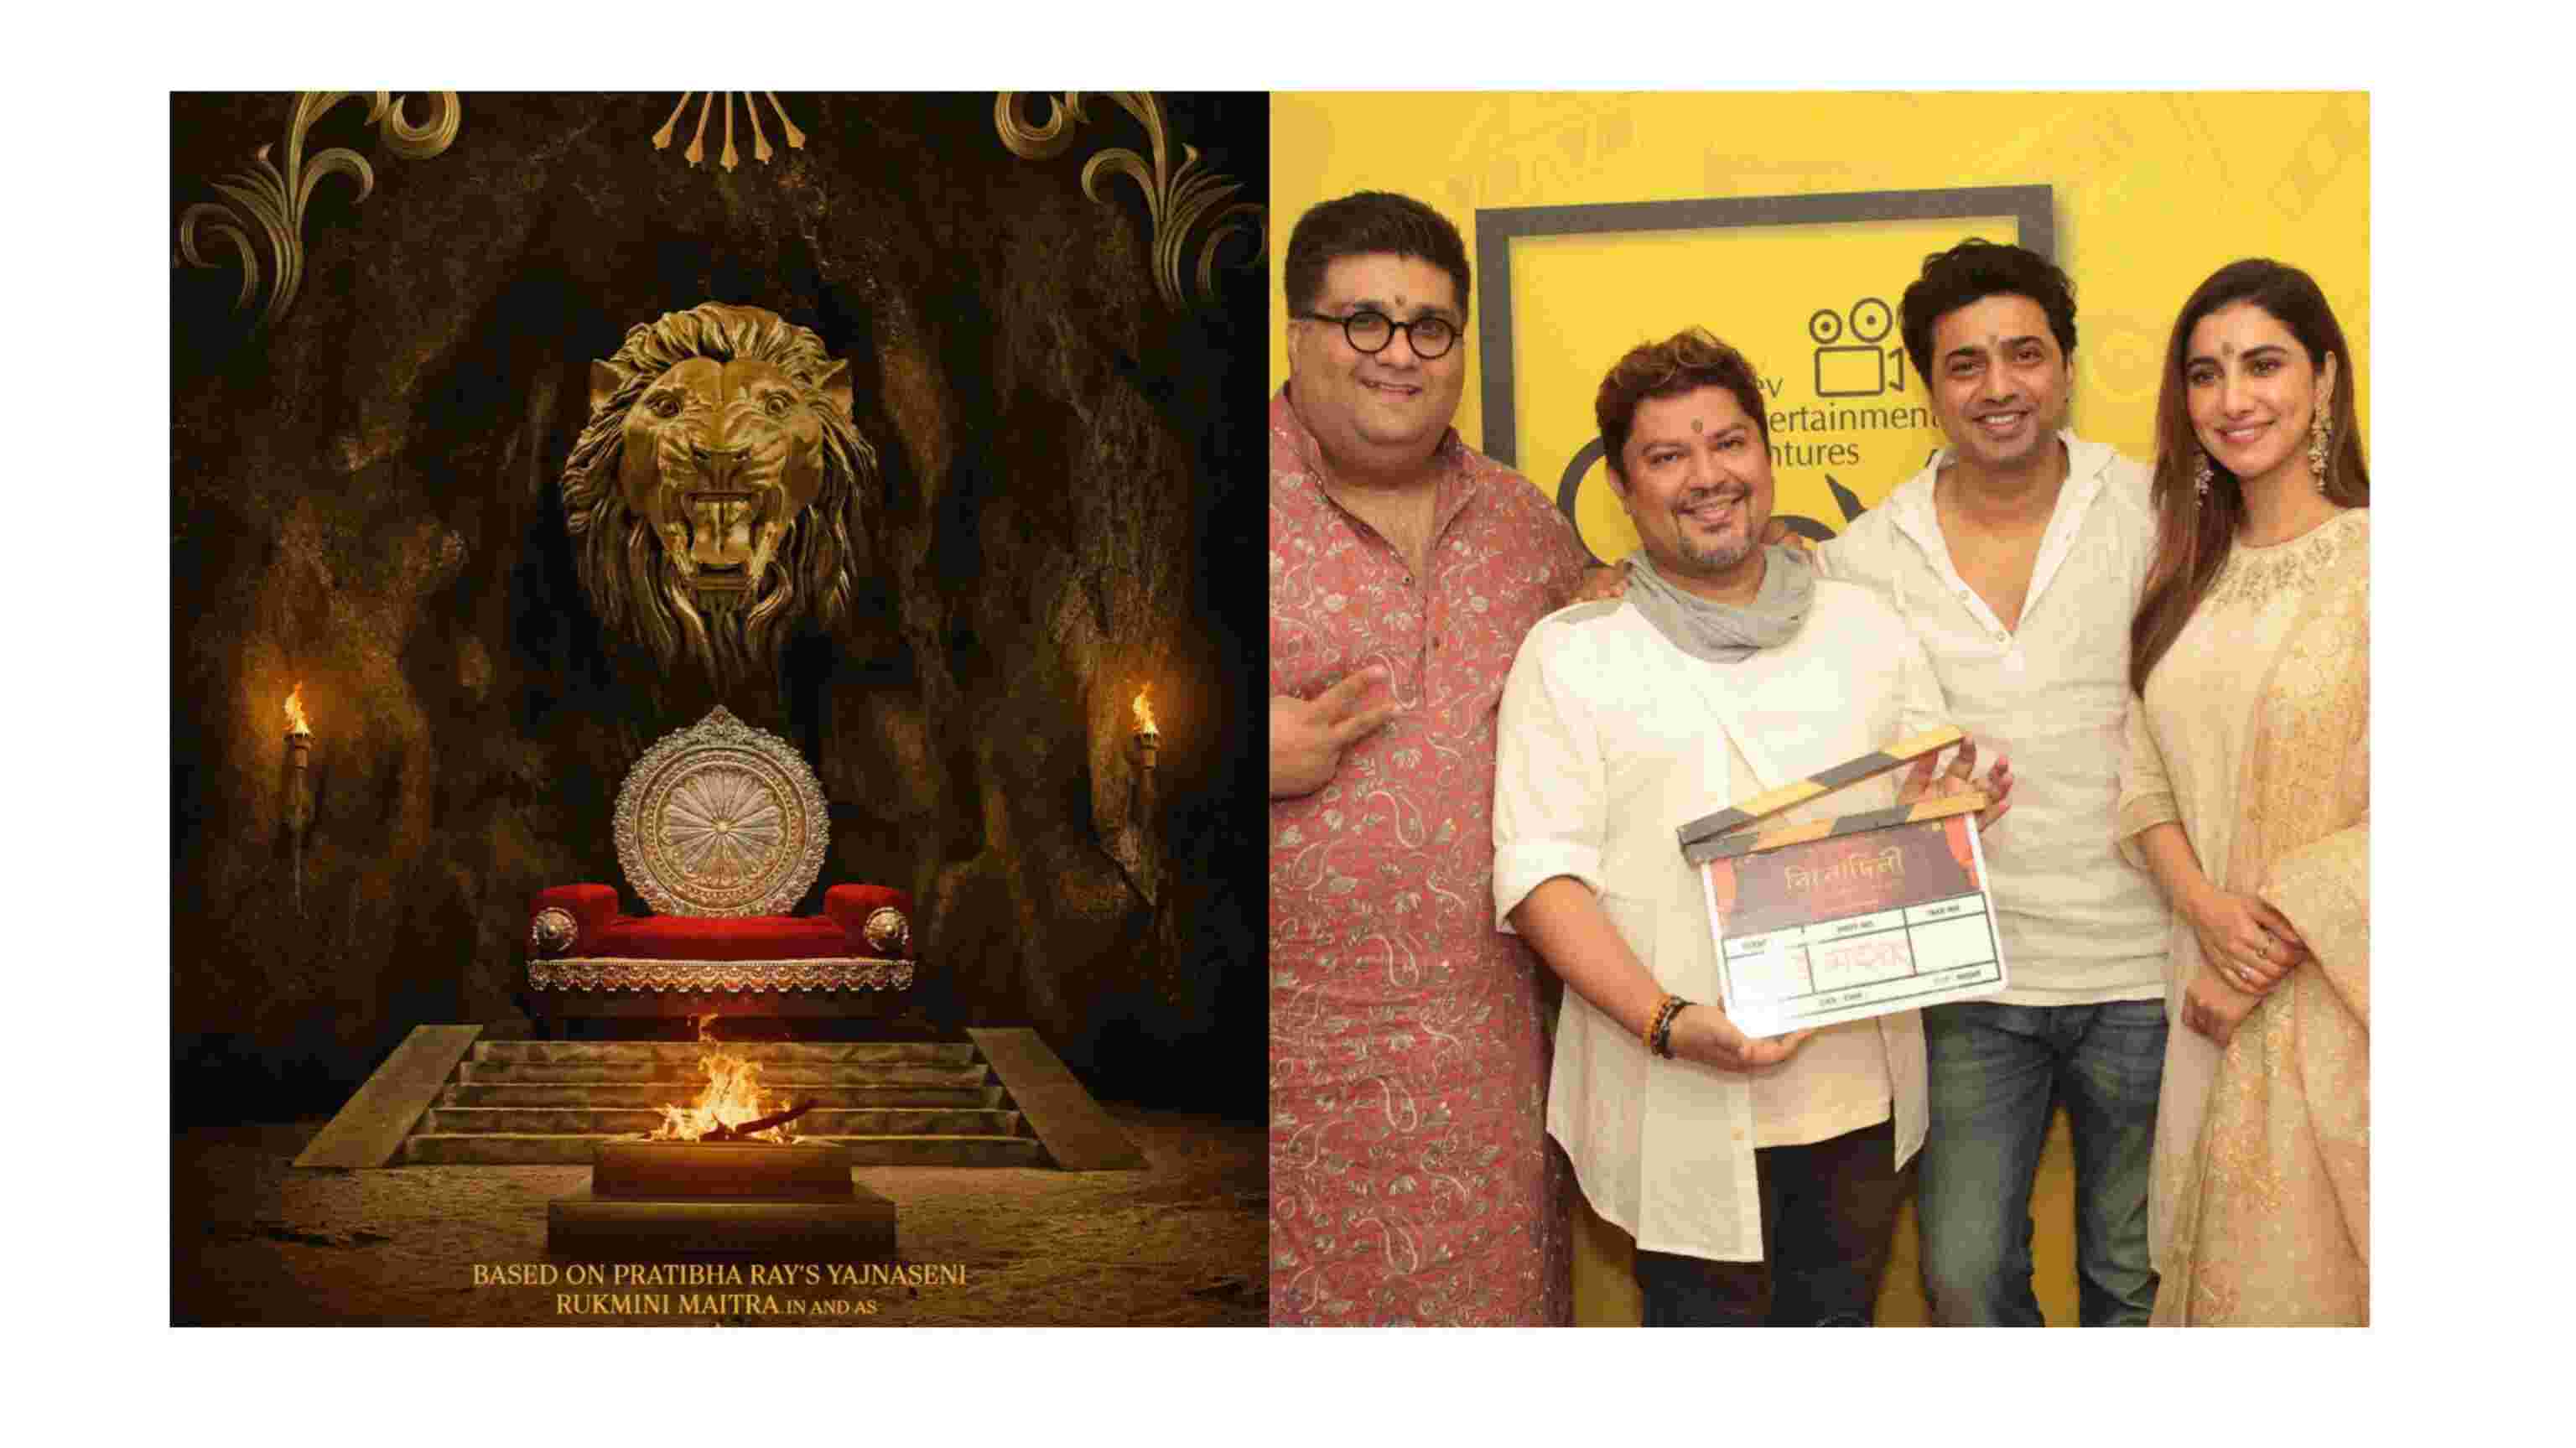 फिल्मकार राम कमल मुखर्जी रुक्मिणी मैत्रा को करेंगे महाभारत पर आधारित फिल्म में निर्देशित